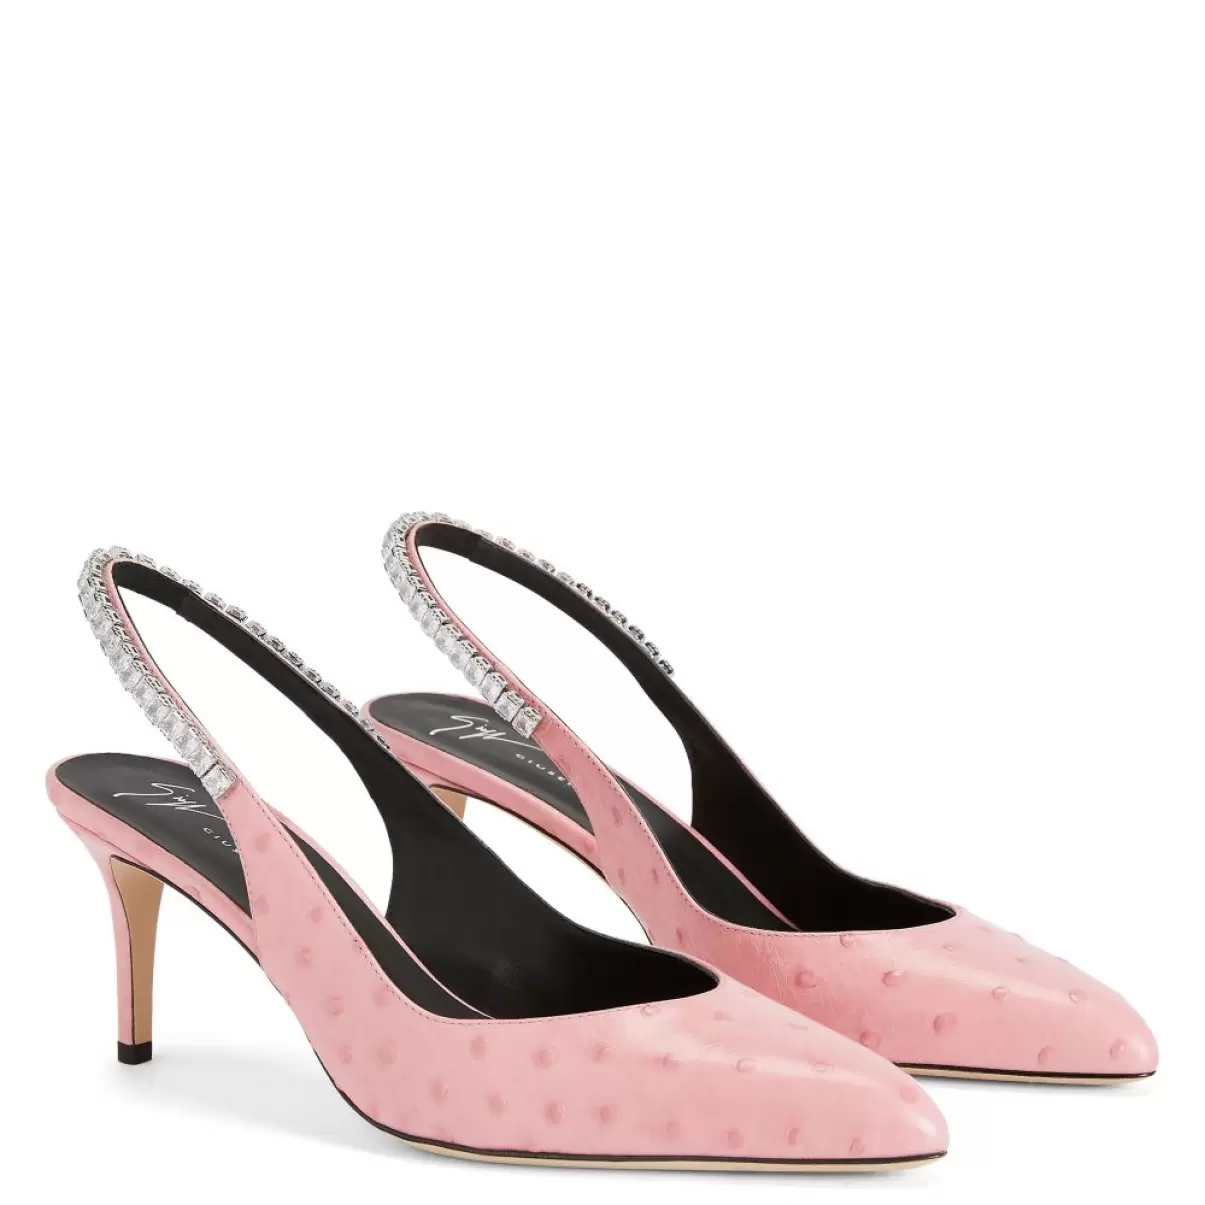 Rachyl Zapatos De Salón Giuseppe Zanotti Mujer Rosa - 2